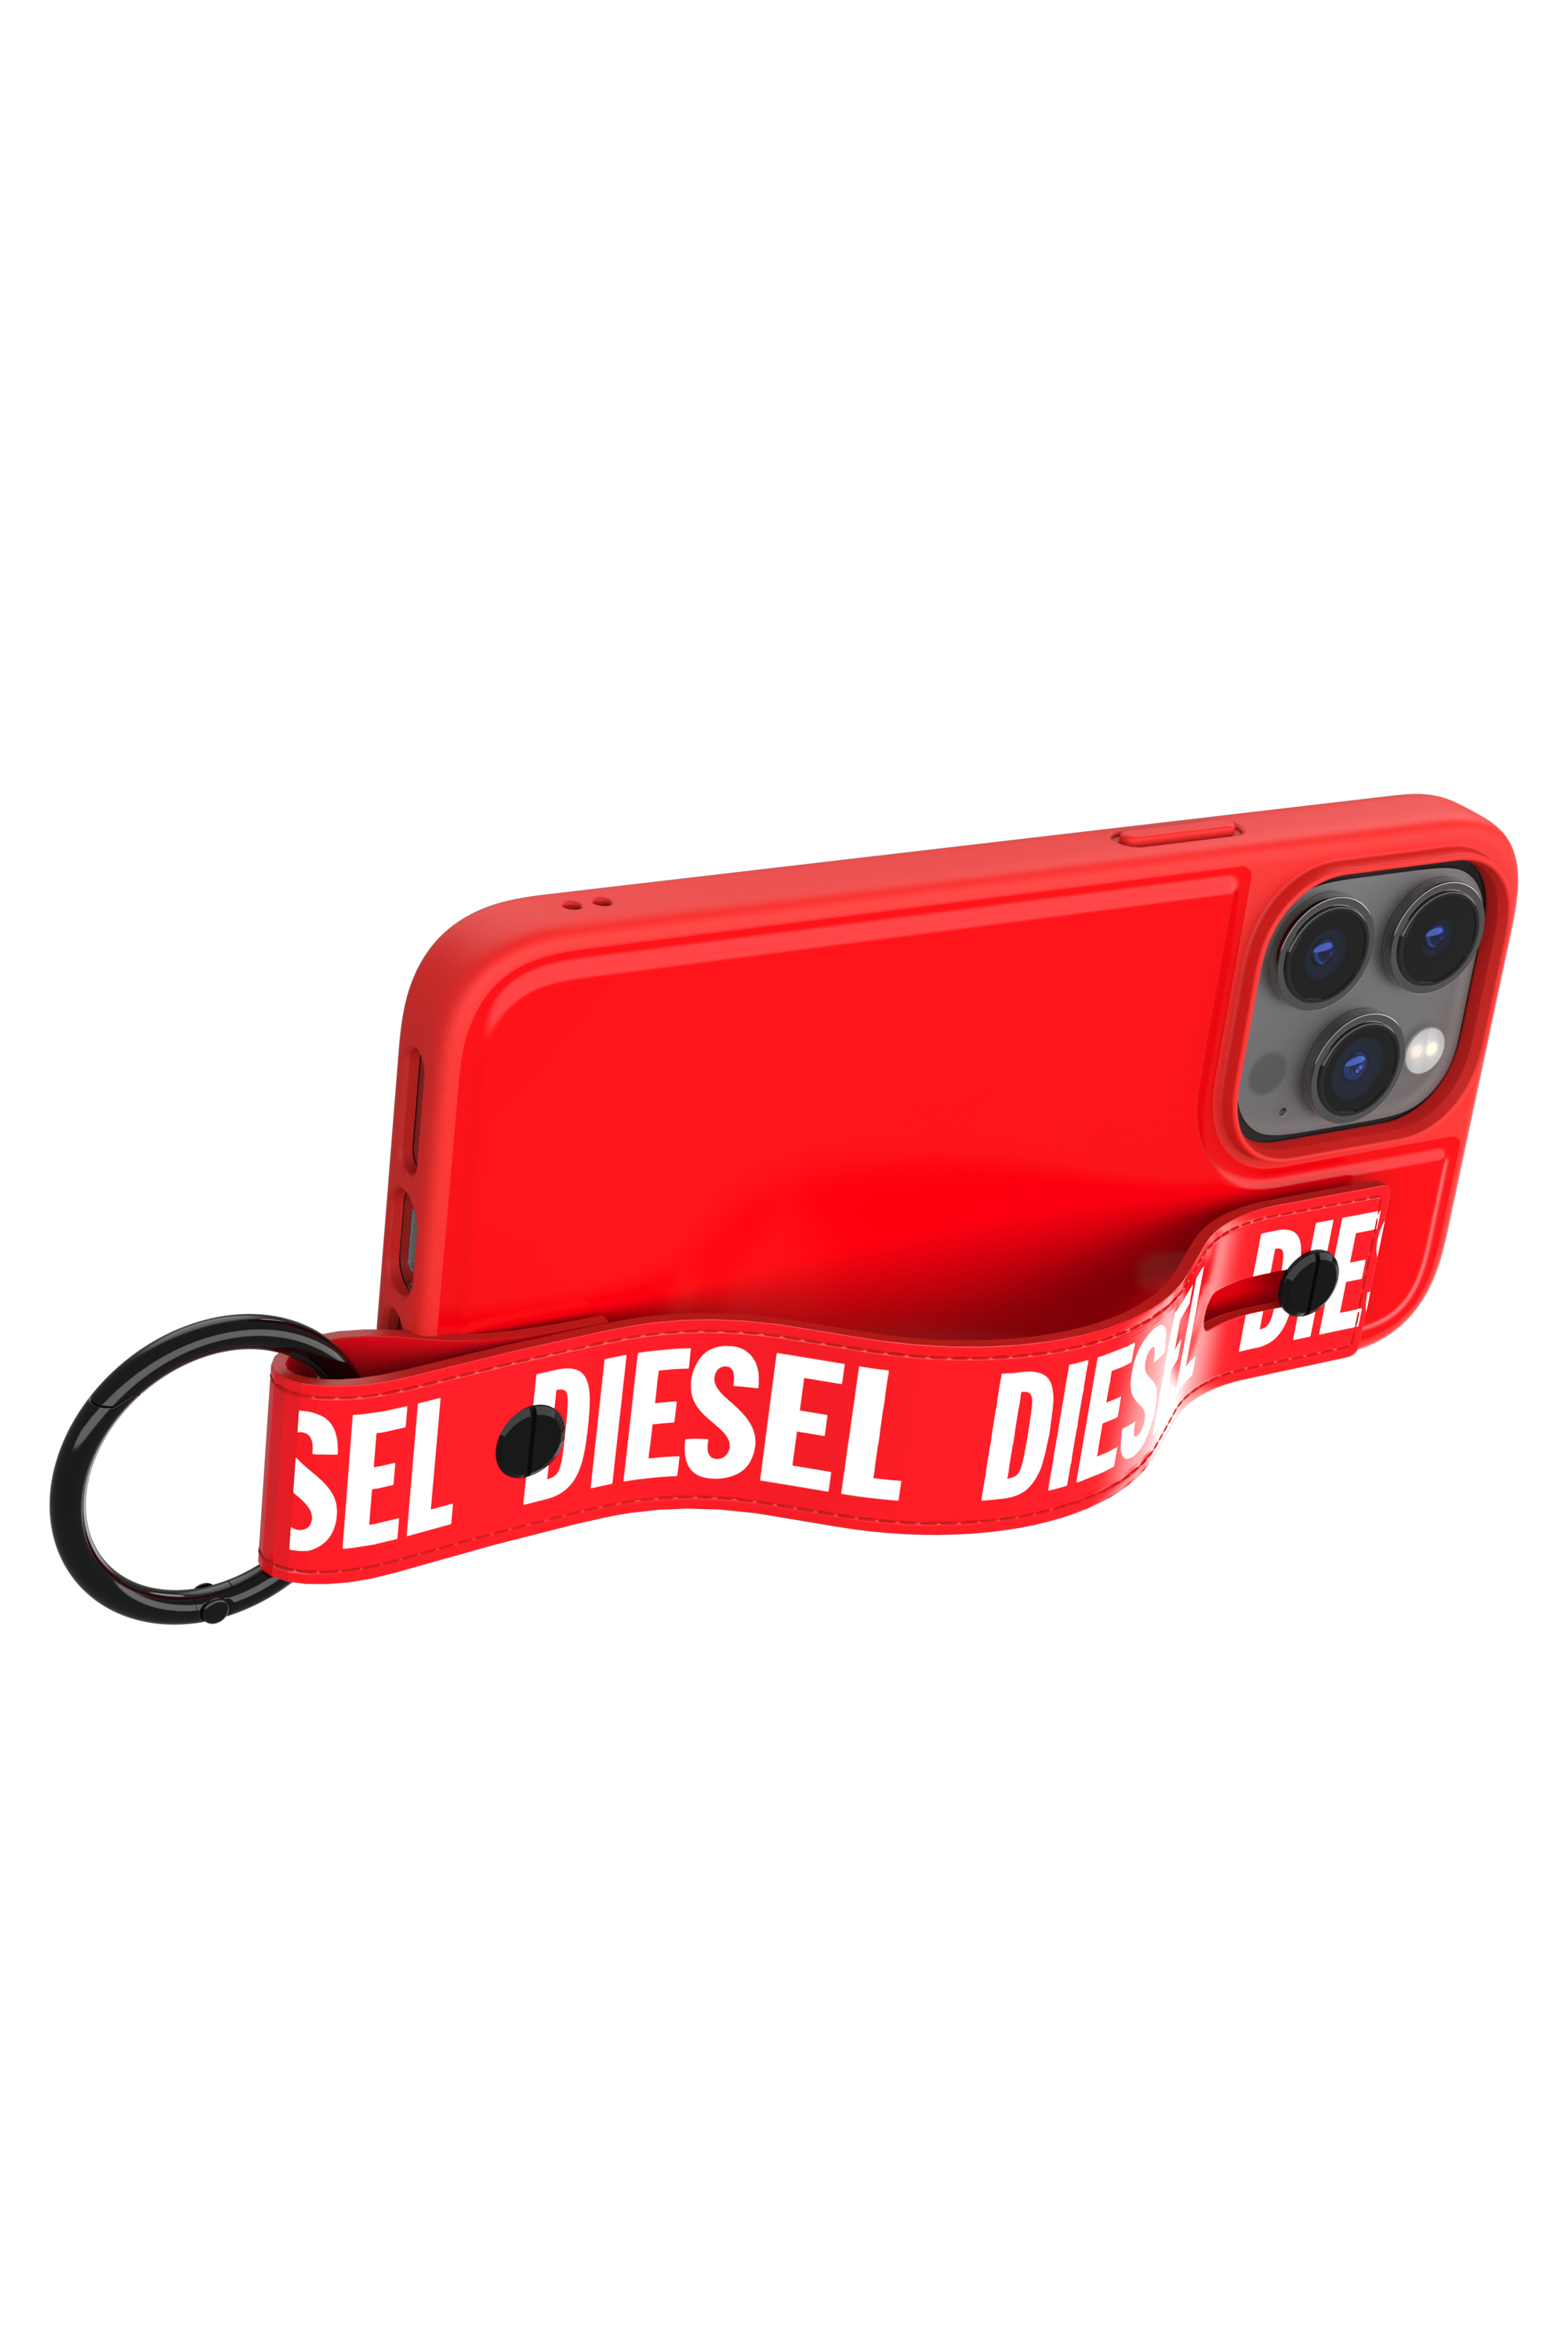 Diesel - 50288 MOULDED CASE, Red - Image 5